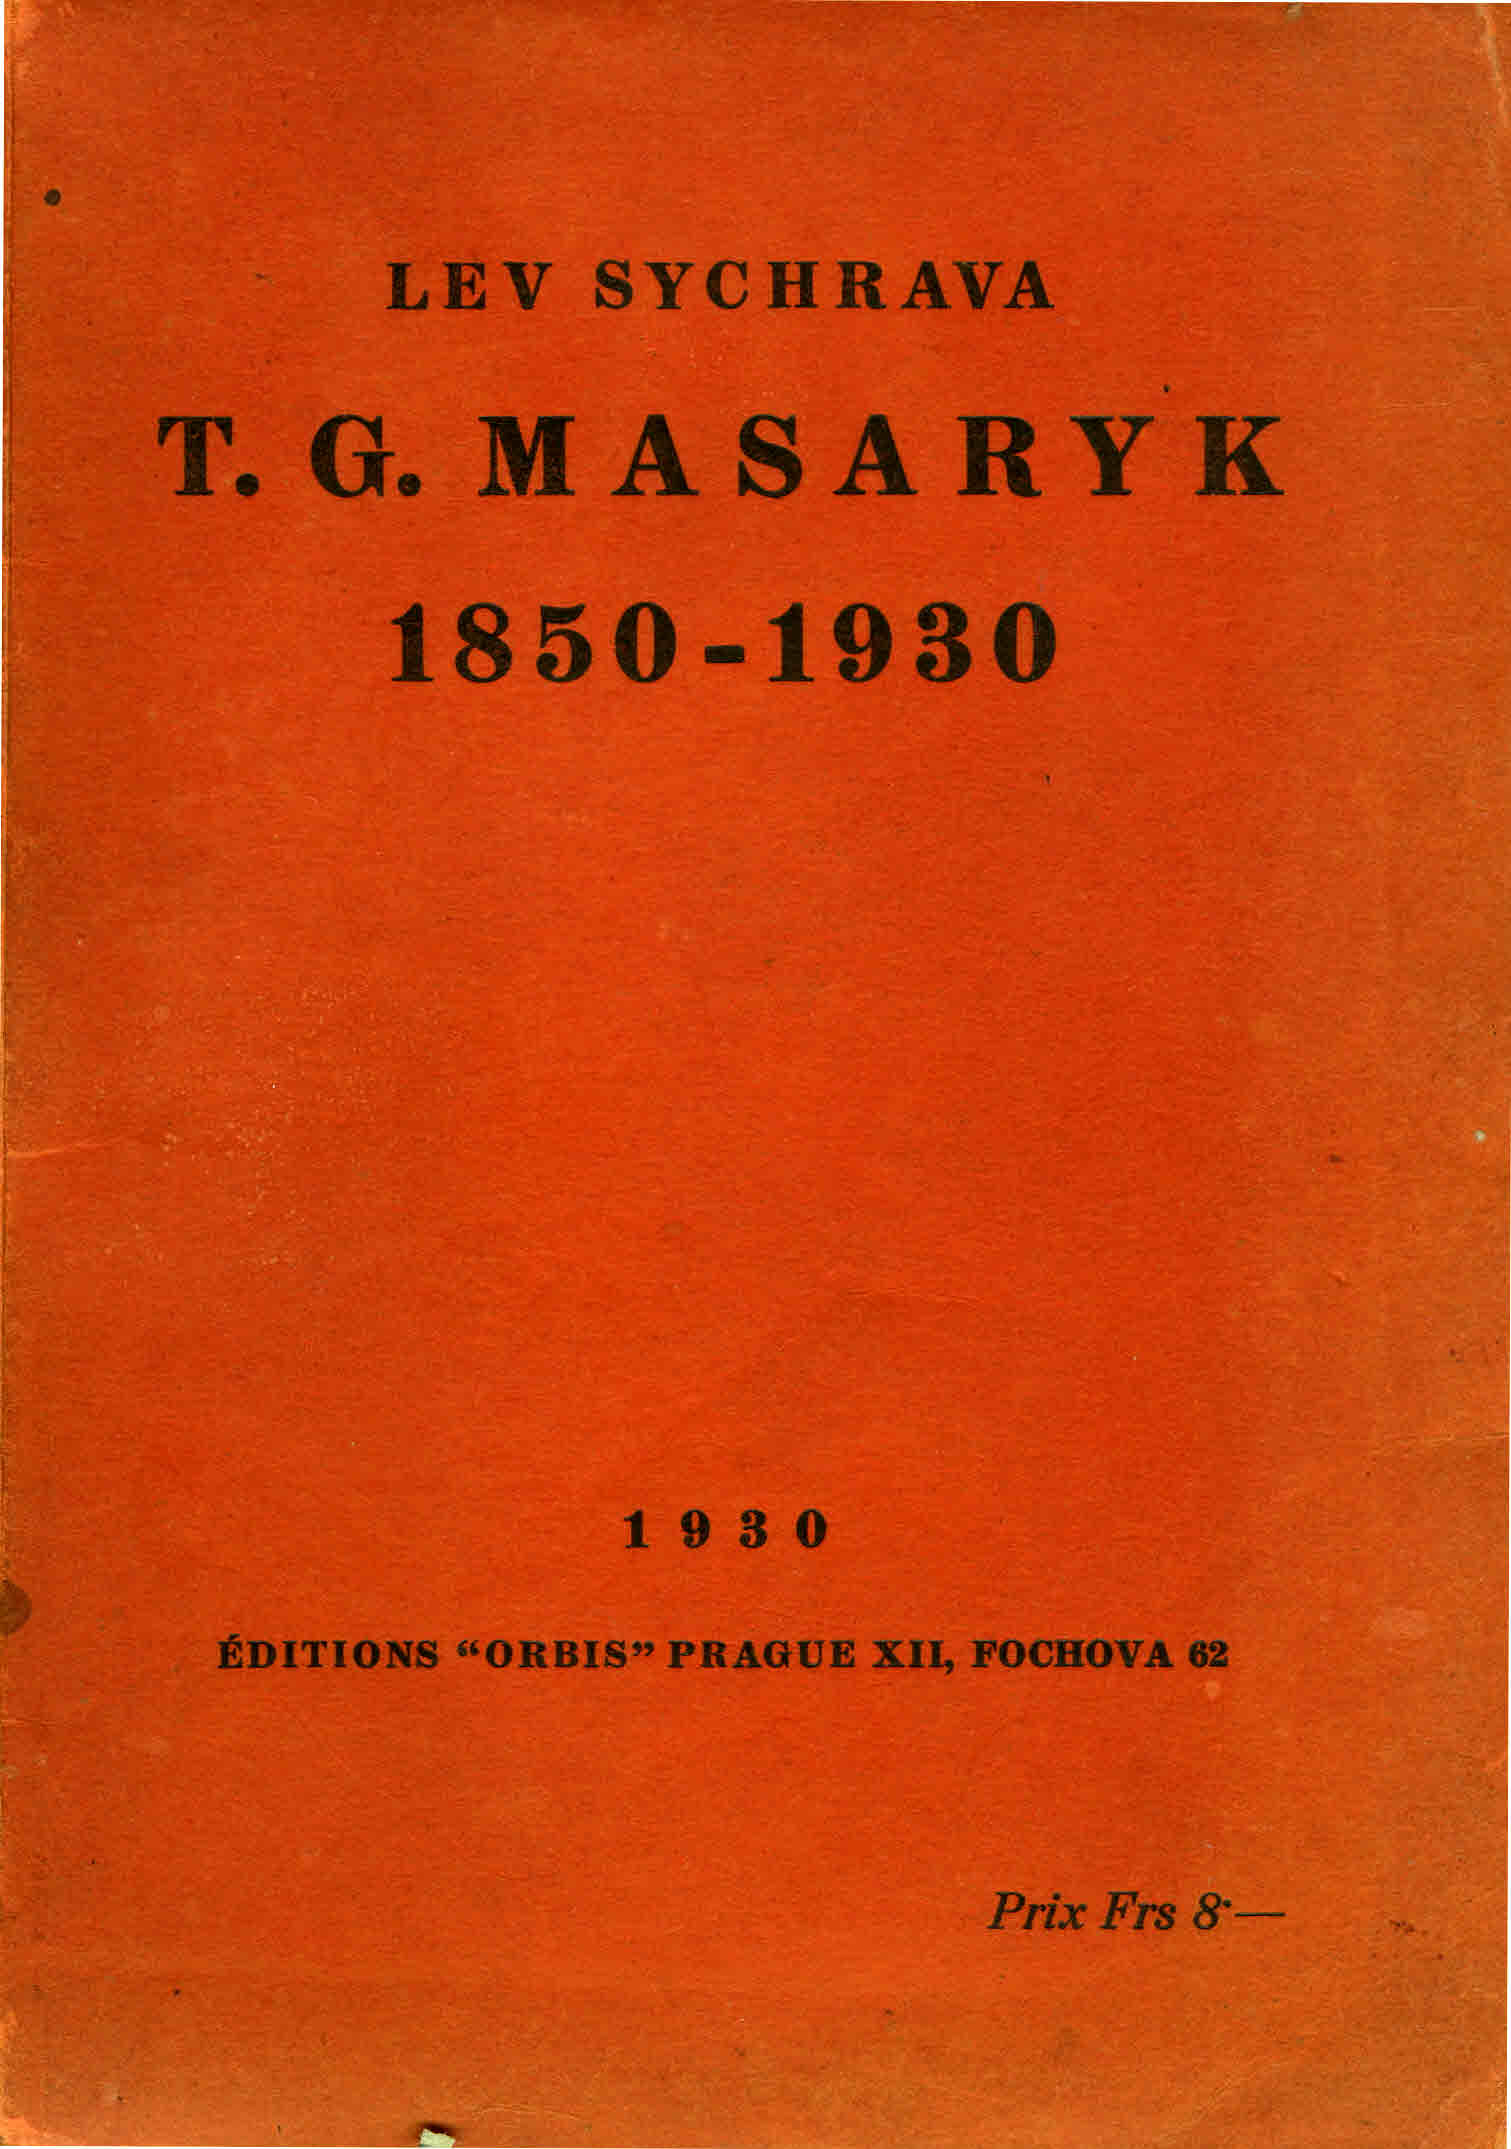 T. G. MASARYK 1850-1930